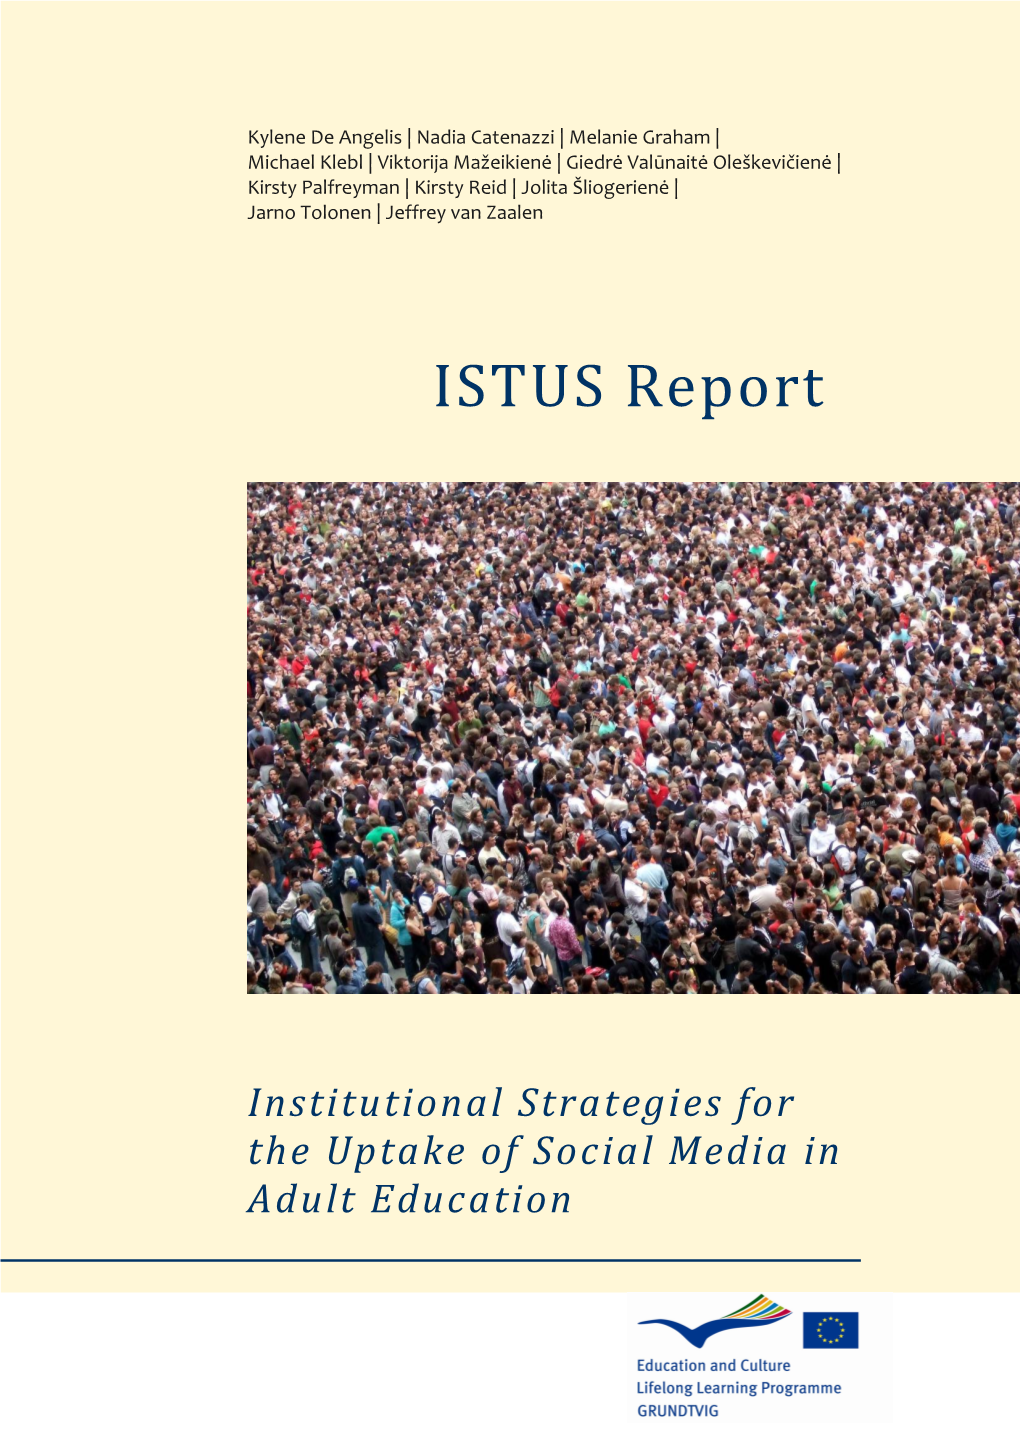 ISTUS Report